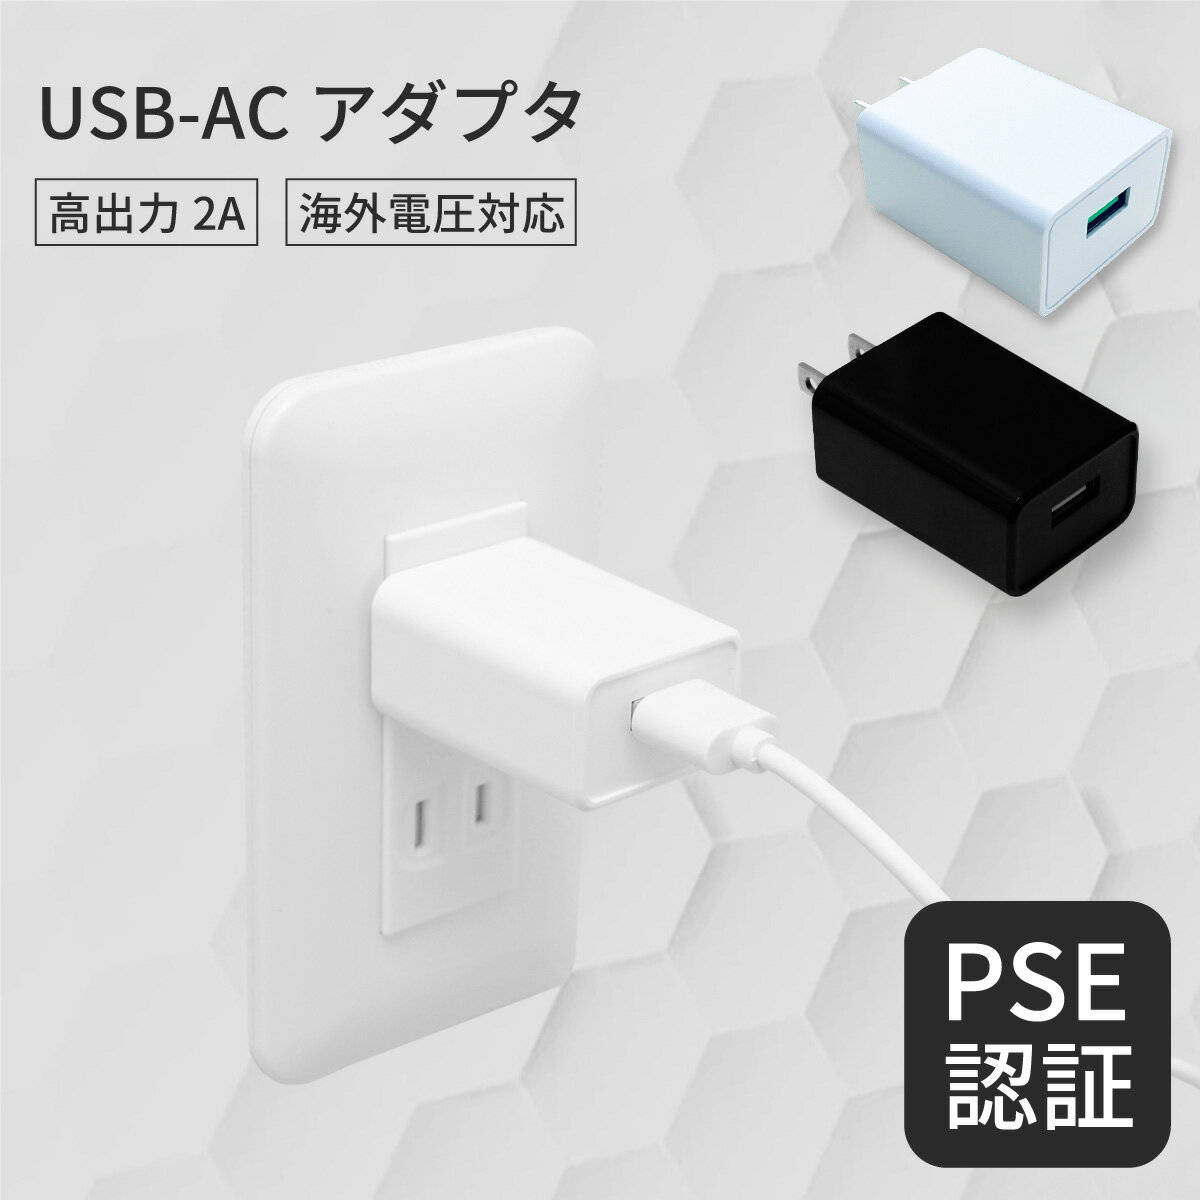 USB コンセント USB充電器 スマホ 充電器 USB-AC アダプタ 急速充電 iPhone 充電器USB-AC アダプター USB 充電器 スマホ ネコポス送料無料